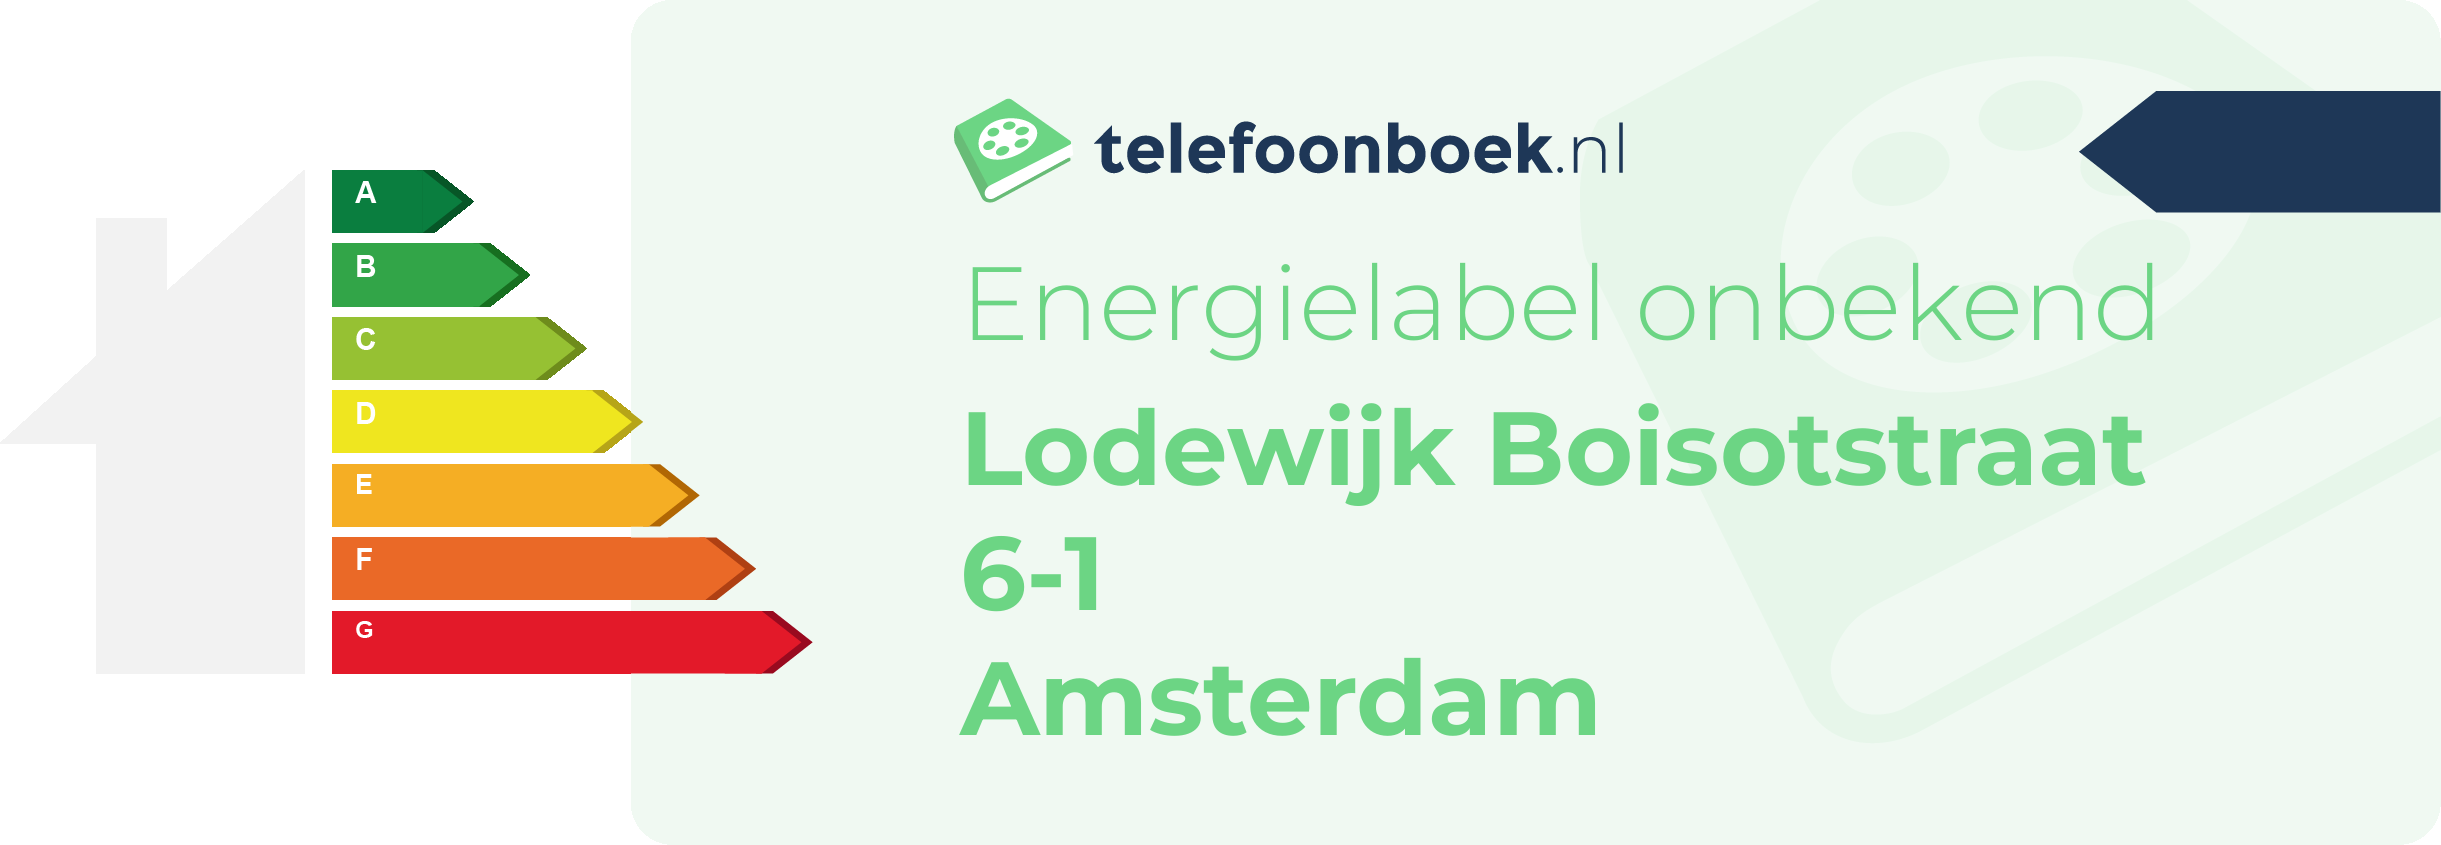 Energielabel Lodewijk Boisotstraat 6-1 Amsterdam